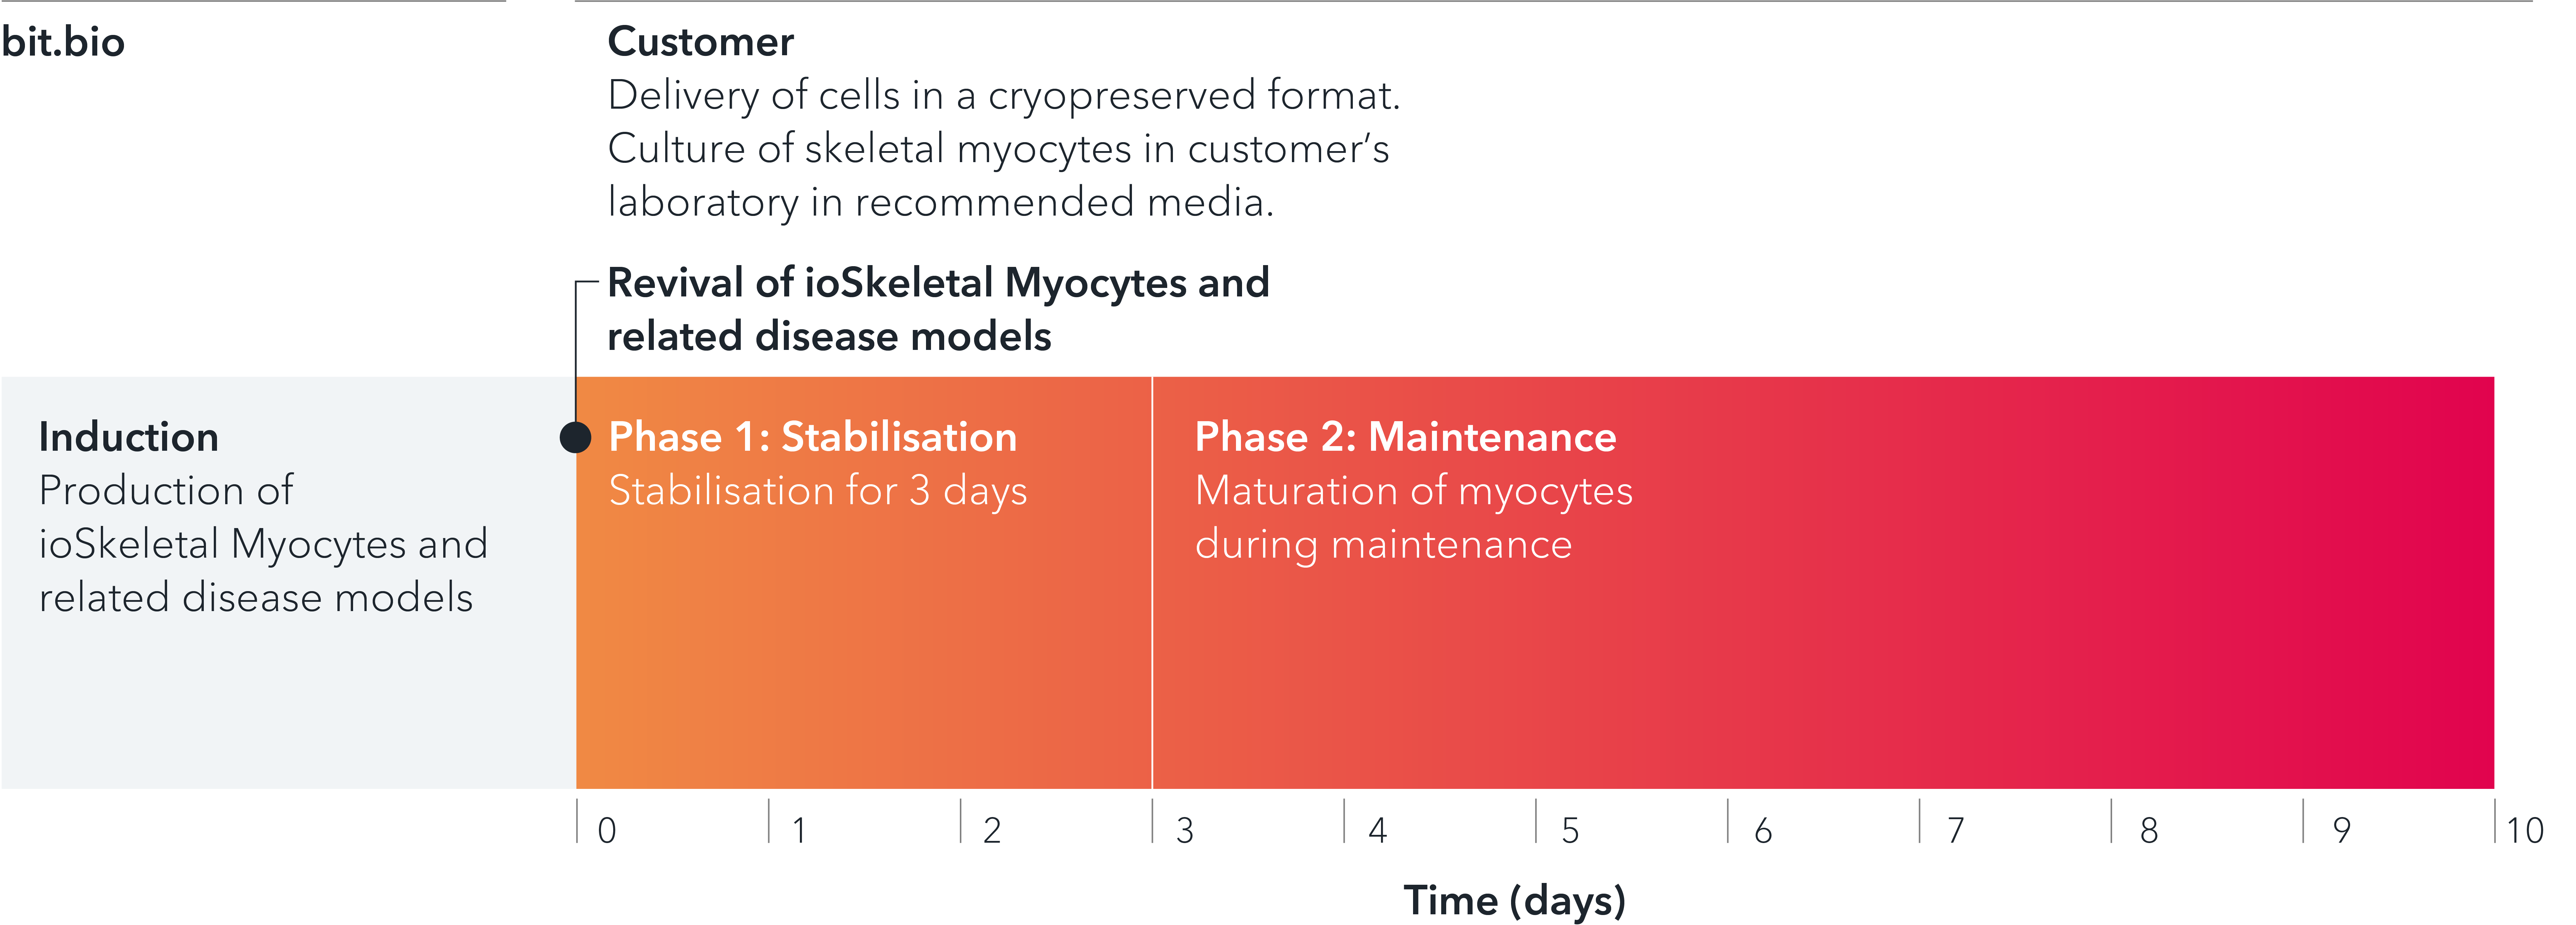 Timeline for culturing bit.bio iPSC-derived skeletal myocytes